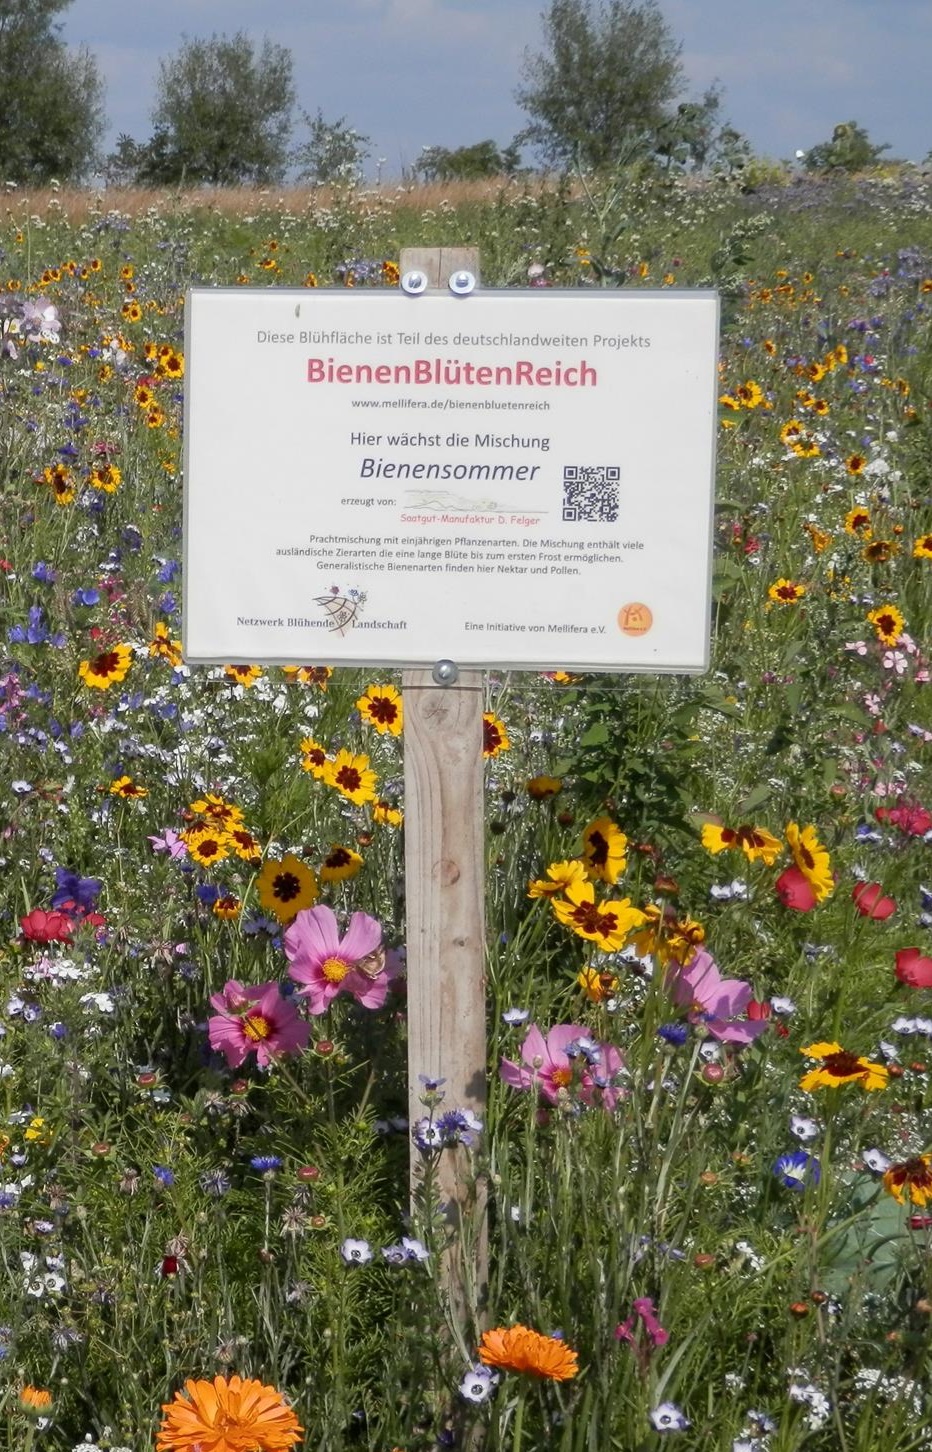 Ein Schild mit der Aufschrift "BienenBlütenReich" steht inmitten eines einige hundert Quadratmeter großen Blühfeldes. Drumherum befinden sich weitere Blühflächen - überall wetteifern Blütenformen und die unterschiedlichsten Farben um den Blick des Betrachters.